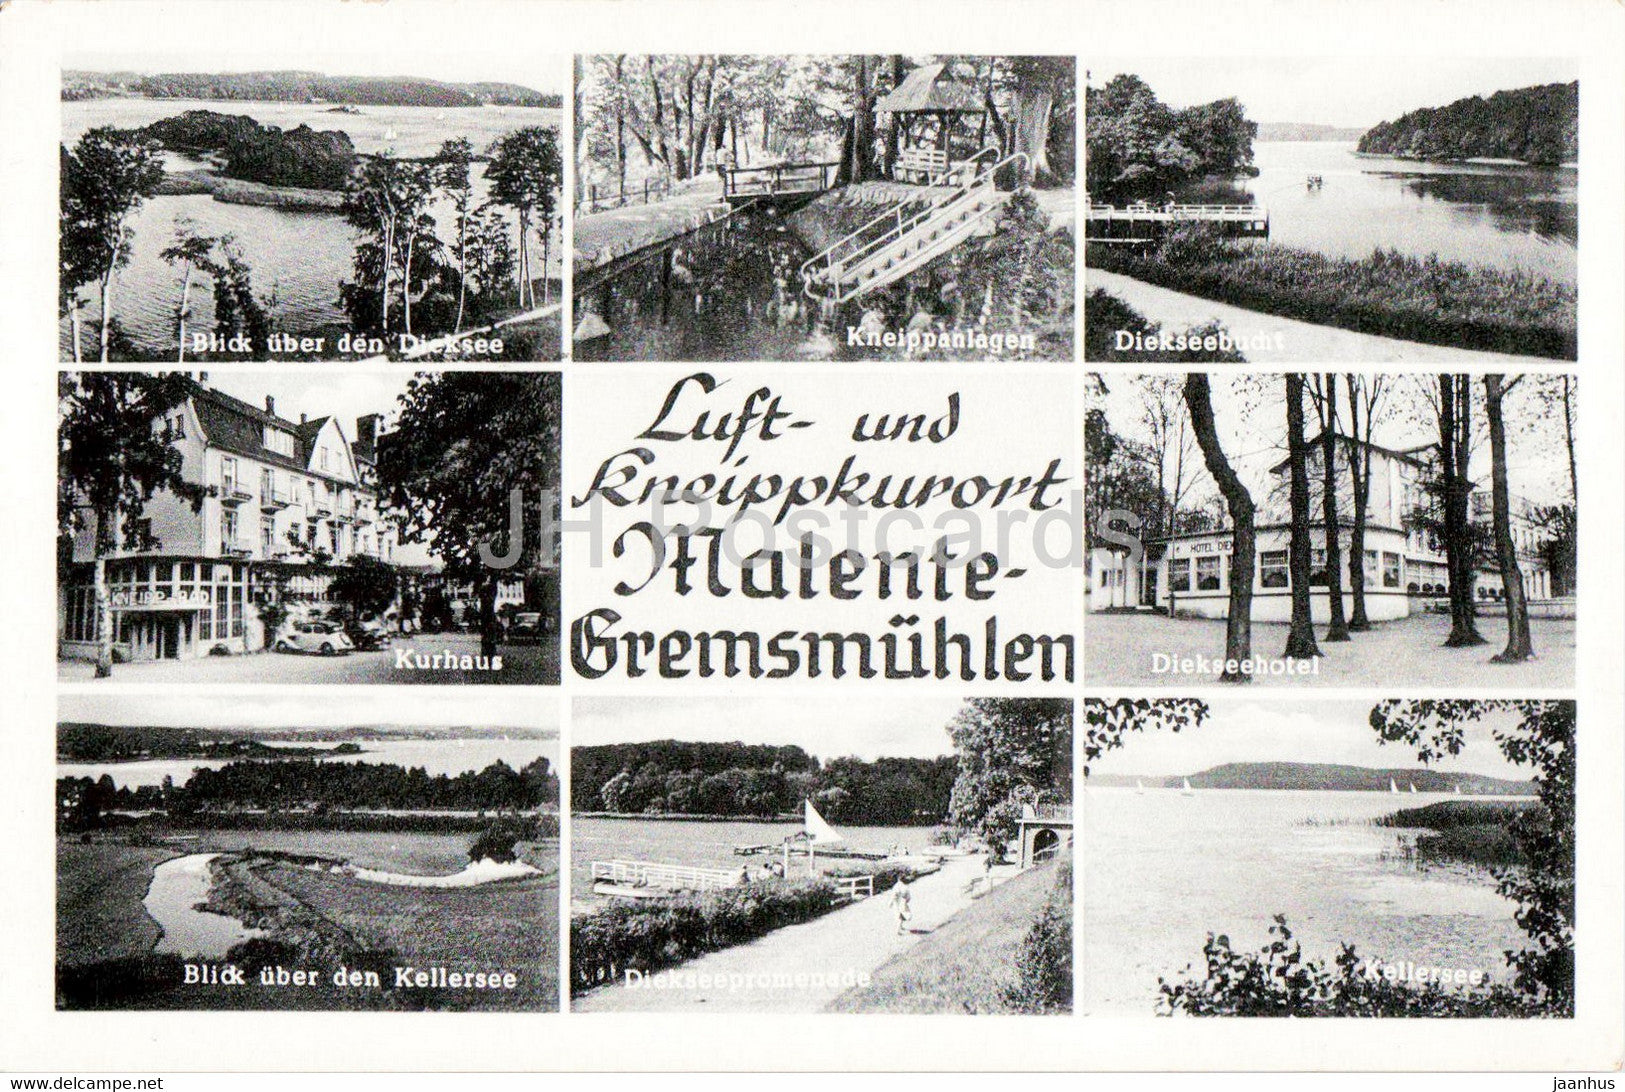 Luft und Kneippkurort Malente Gremsmuhlen - Kurhaus - Diekseehotel - hotel - old postcard - Germany - unused - JH Postcards